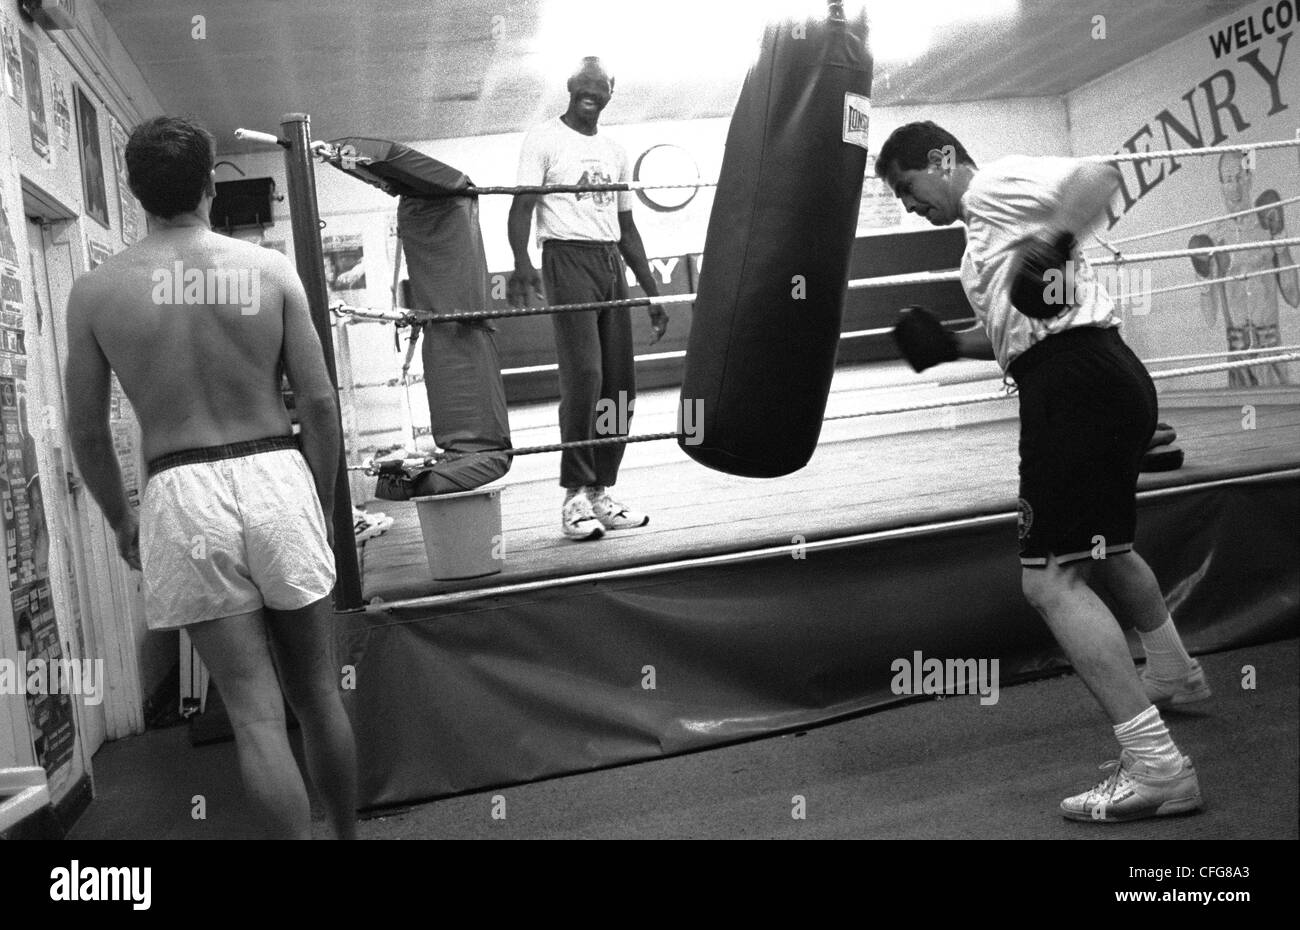 La formation dans un club de boxe à Londres Banque D'Images